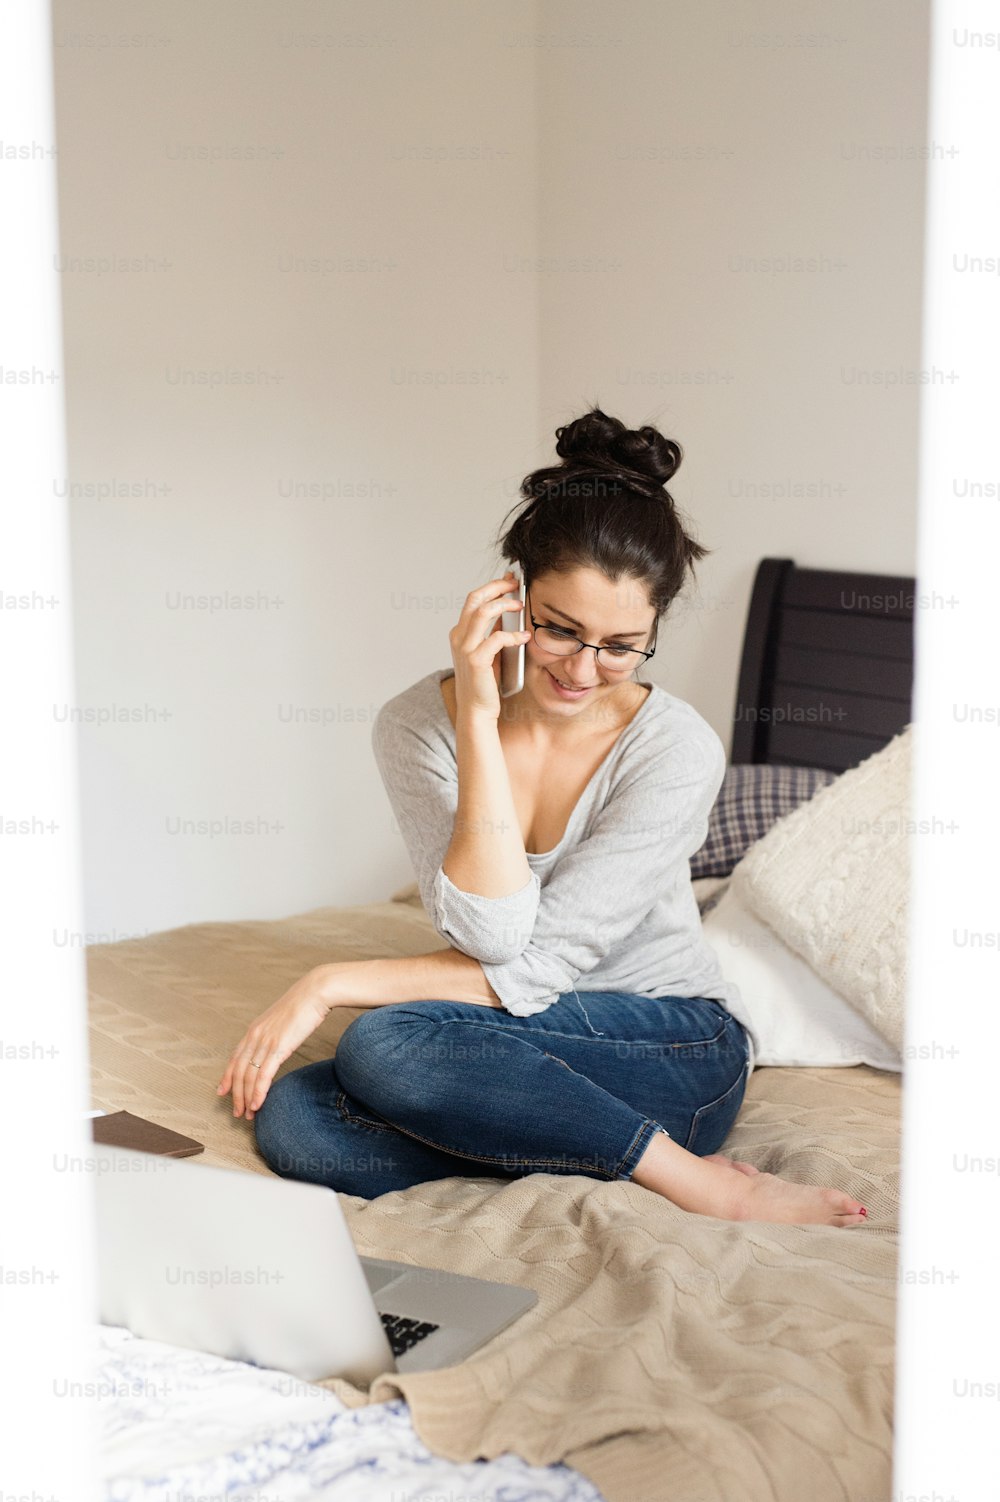 Schöne junge Frau mit Brille, die auf dem Bett sitzt, ein Notebook neben sich, ein Smartphone in der Hand, ein Telefonat, Homeoffice.